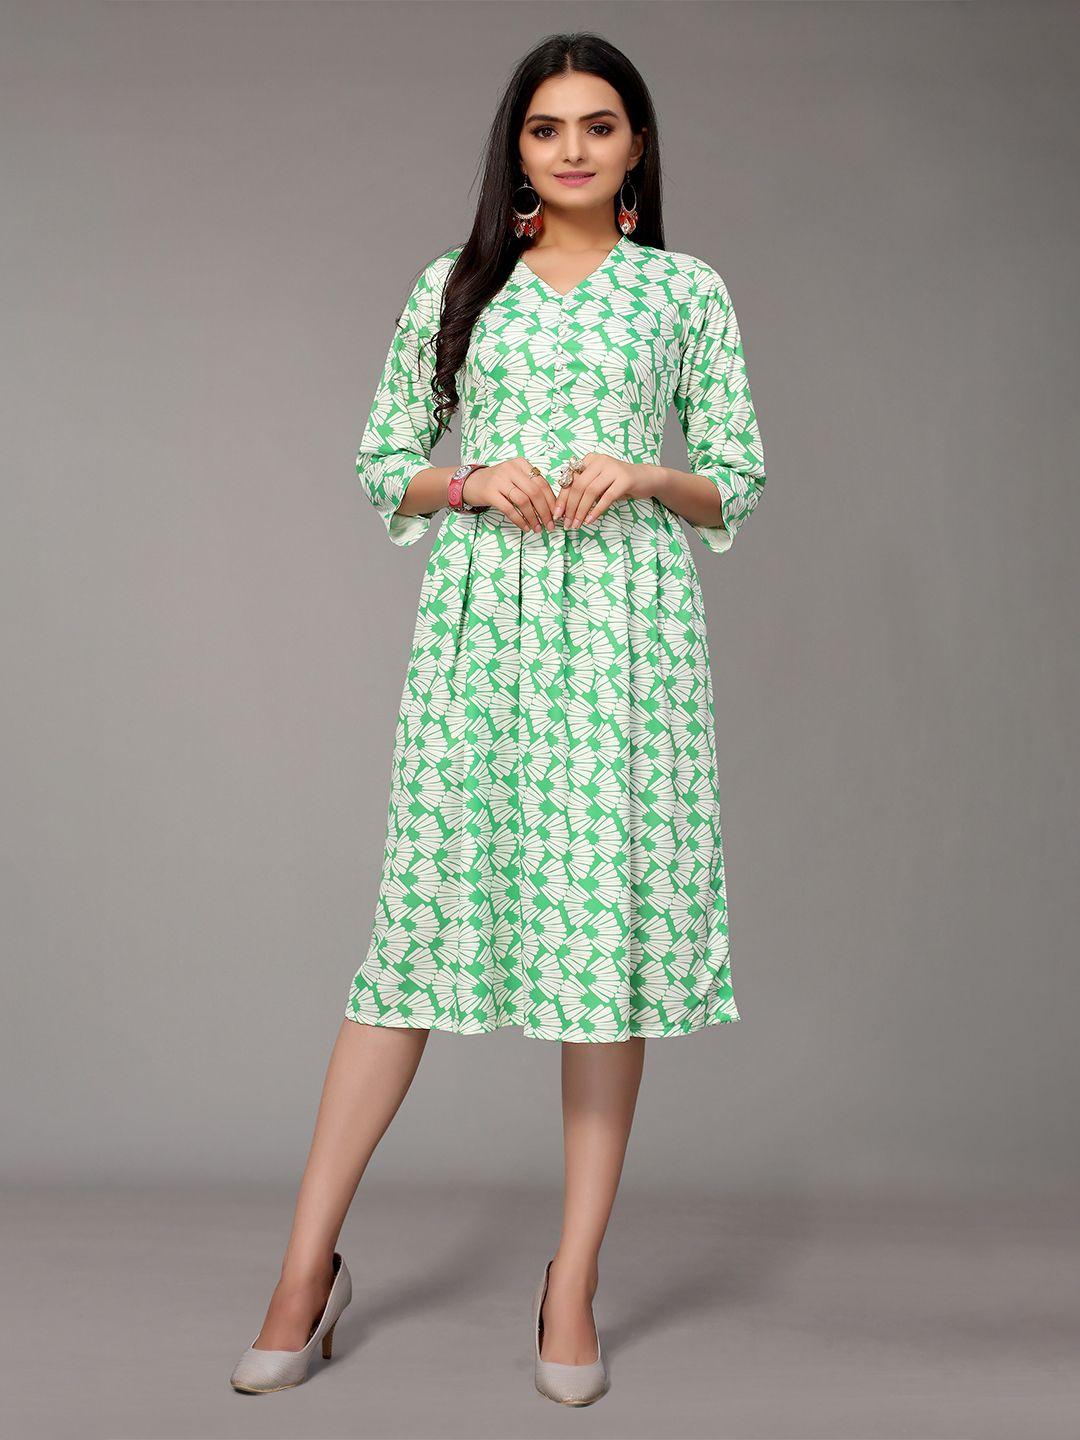 nimayaa green floral crepe dress